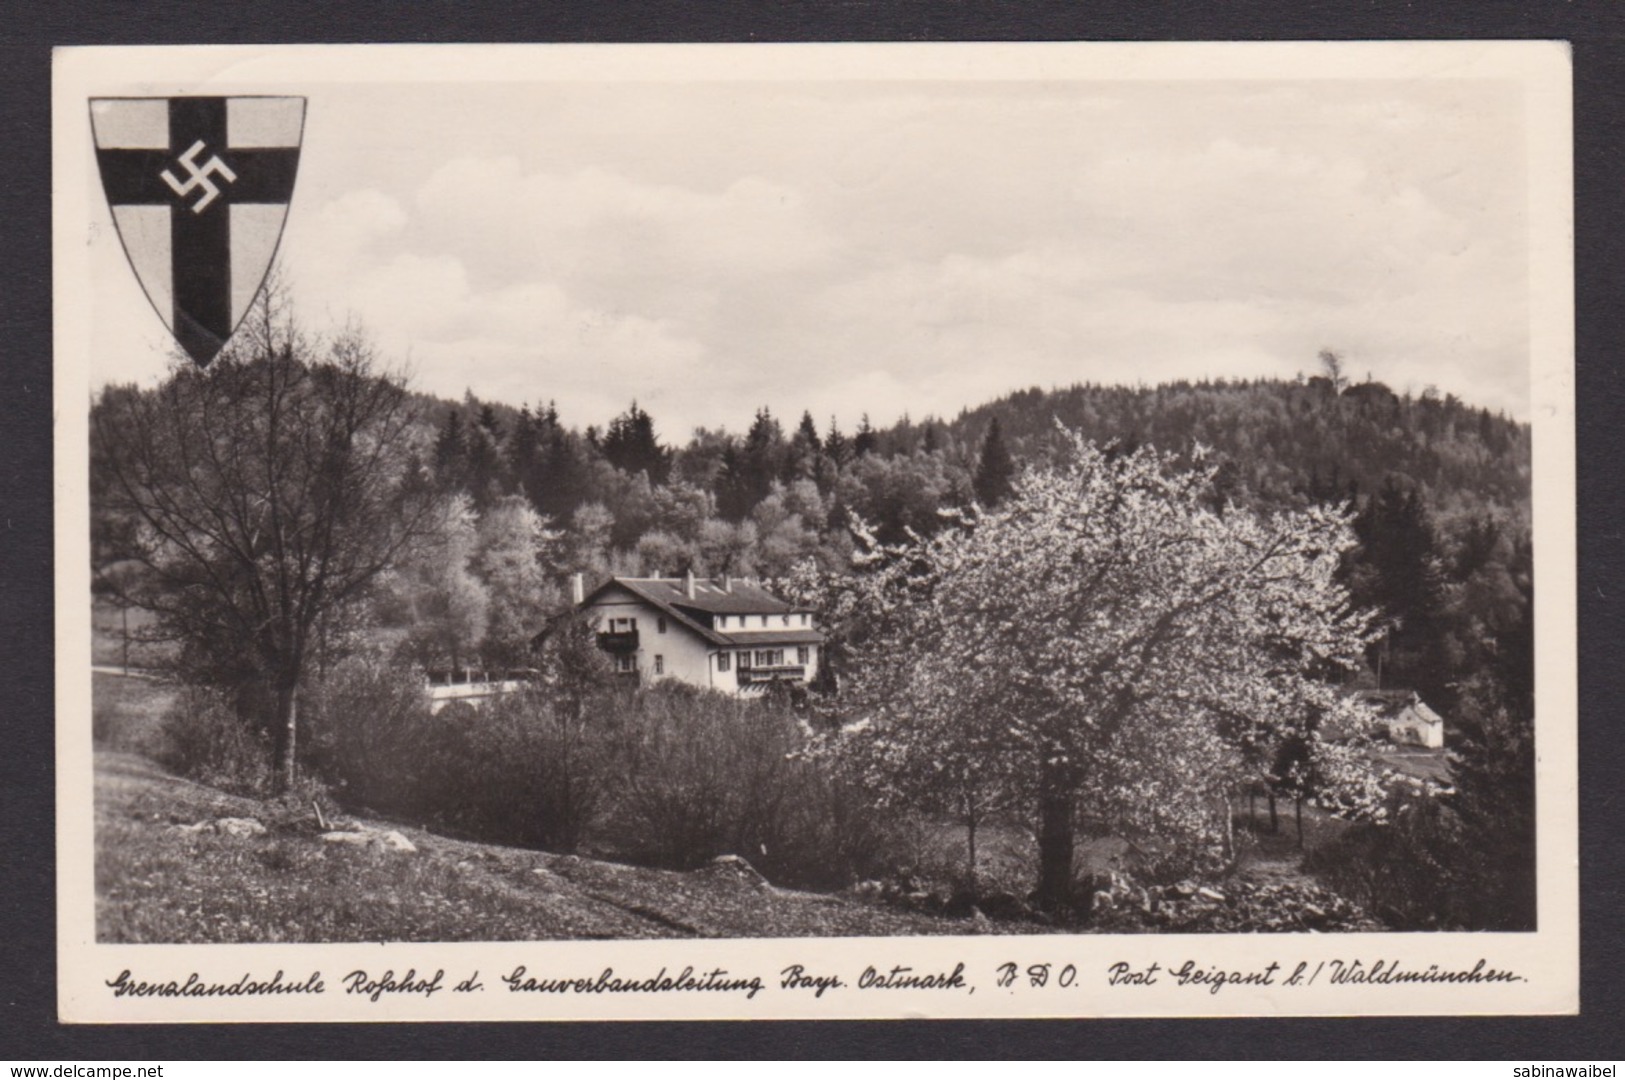 AK / Grenzlandschule Roßhof Der Gauverbandsleitung Bayrisch Ostmark / Gelaufen 1940 ...  ( E 519 ) - Weltkrieg 1939-45